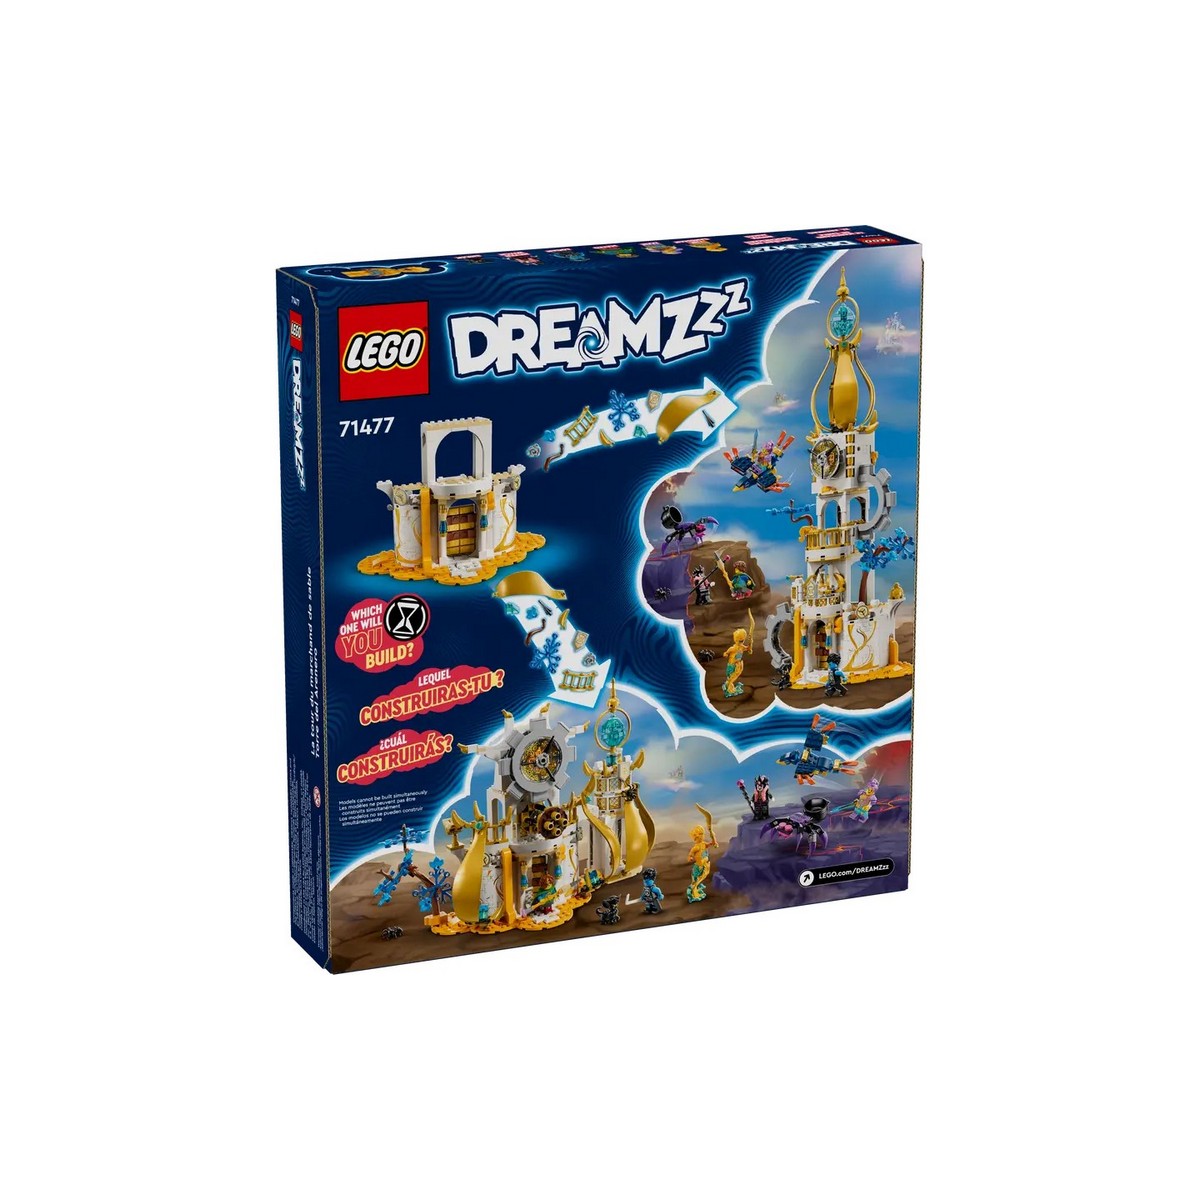 LEGO DREAMZZZ VEZA PIESKOMUZA /71477/